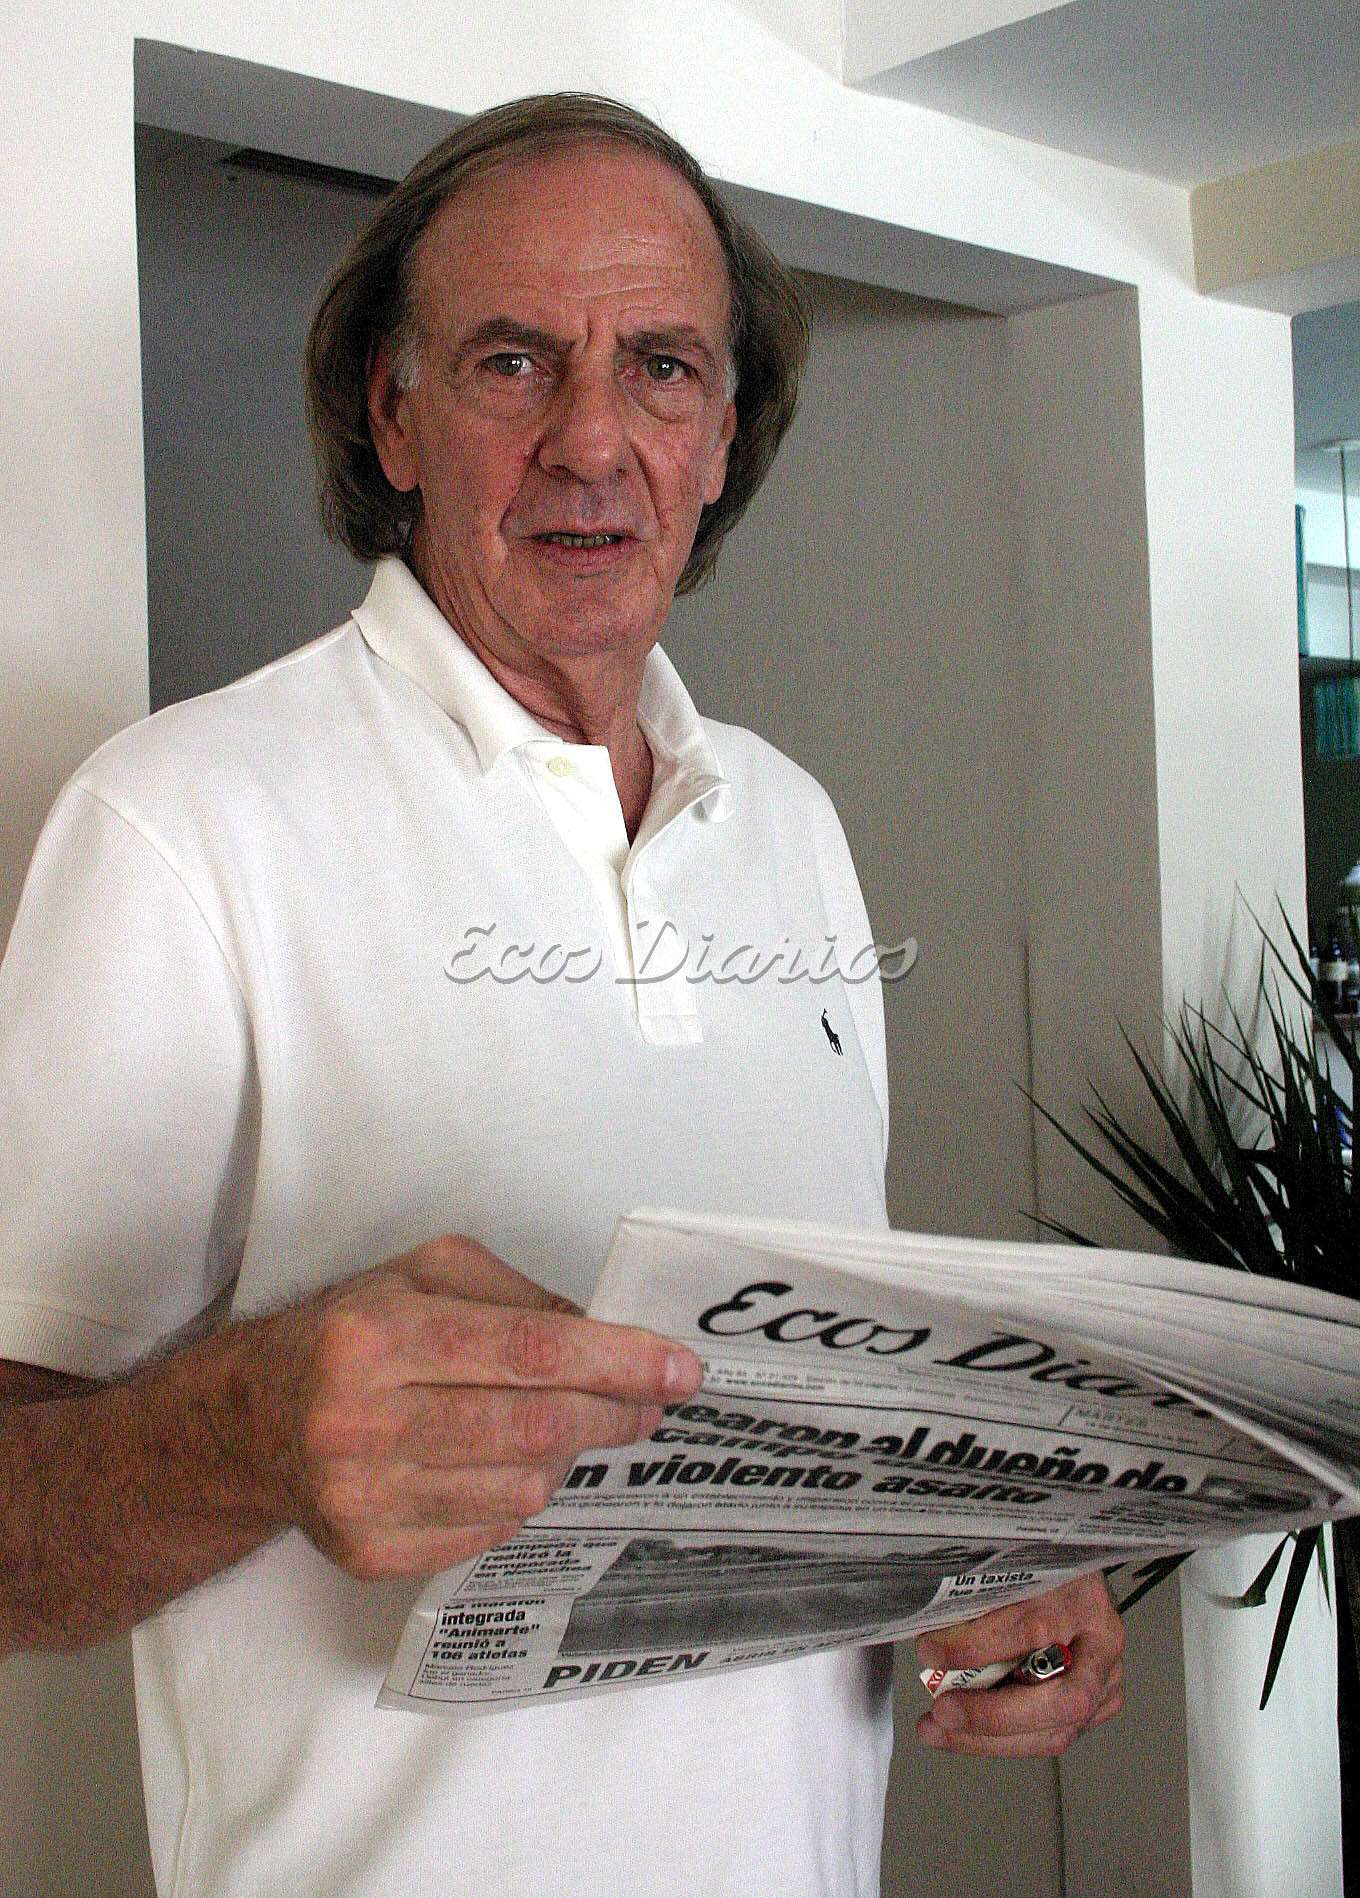 César Luis Menotti con el Ecos Diarios en su mano